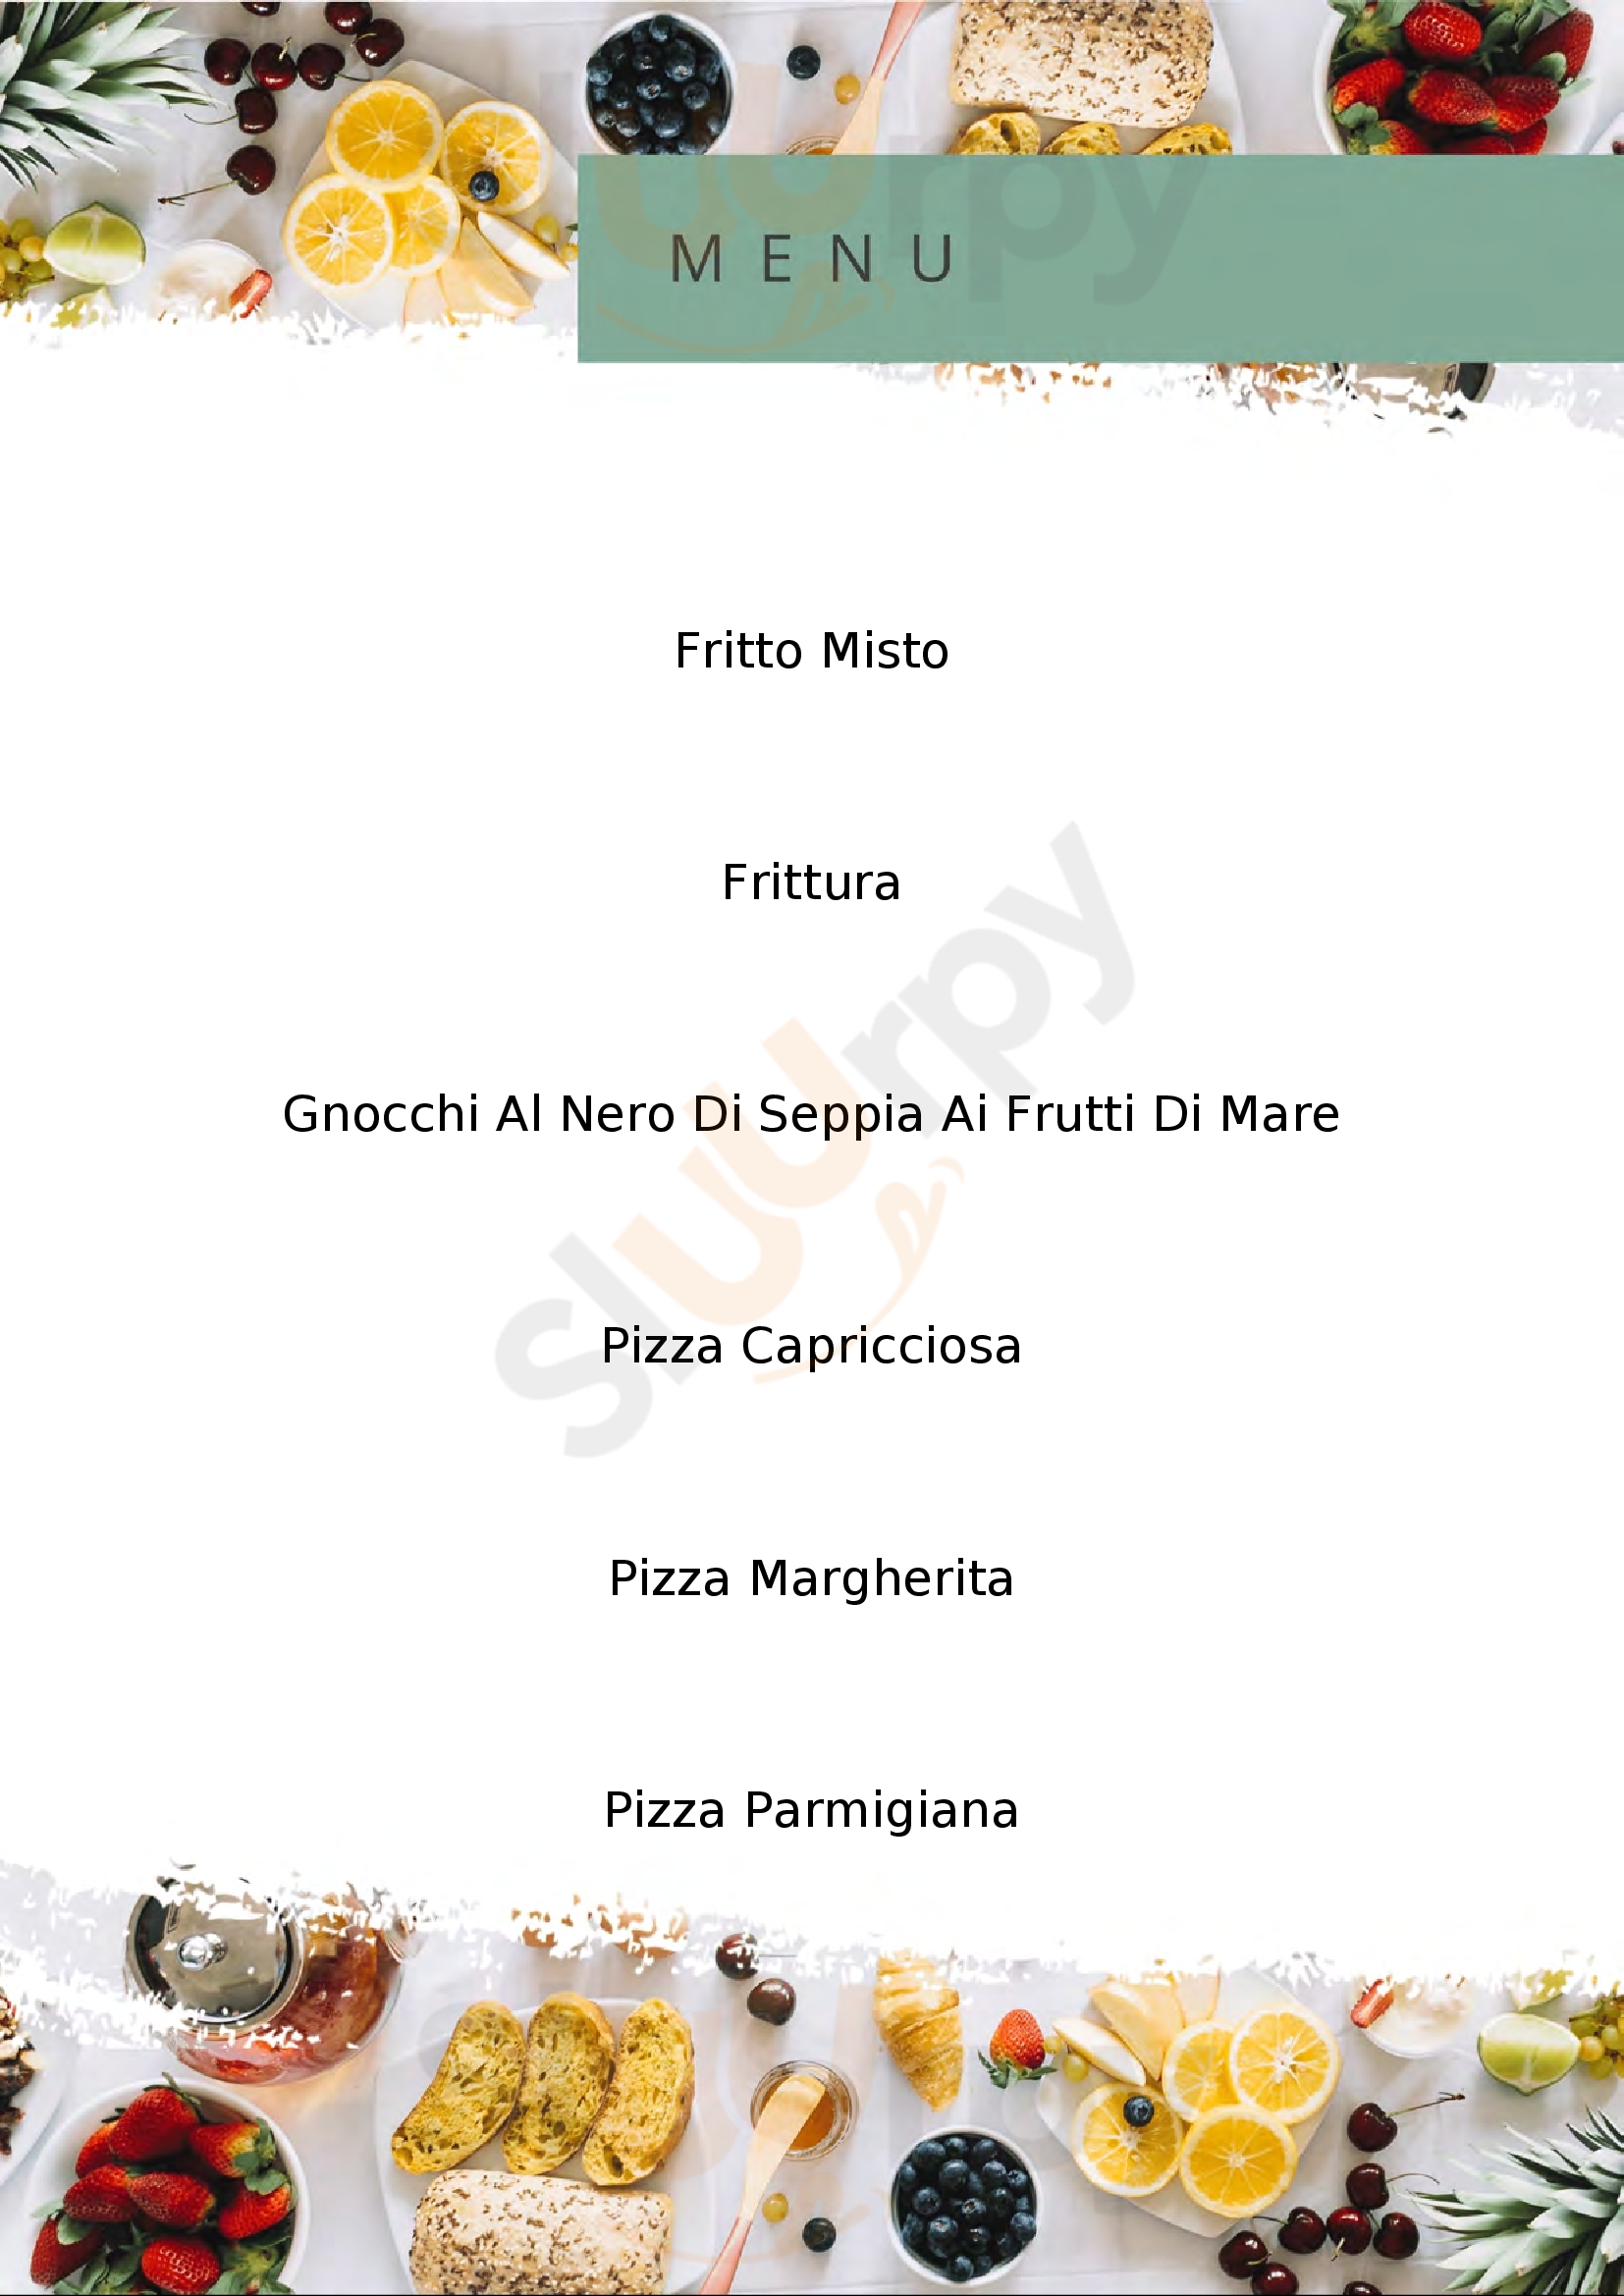 Pizzeria-Ristorante IL PALAZZETTO Cogoleto menù 1 pagina